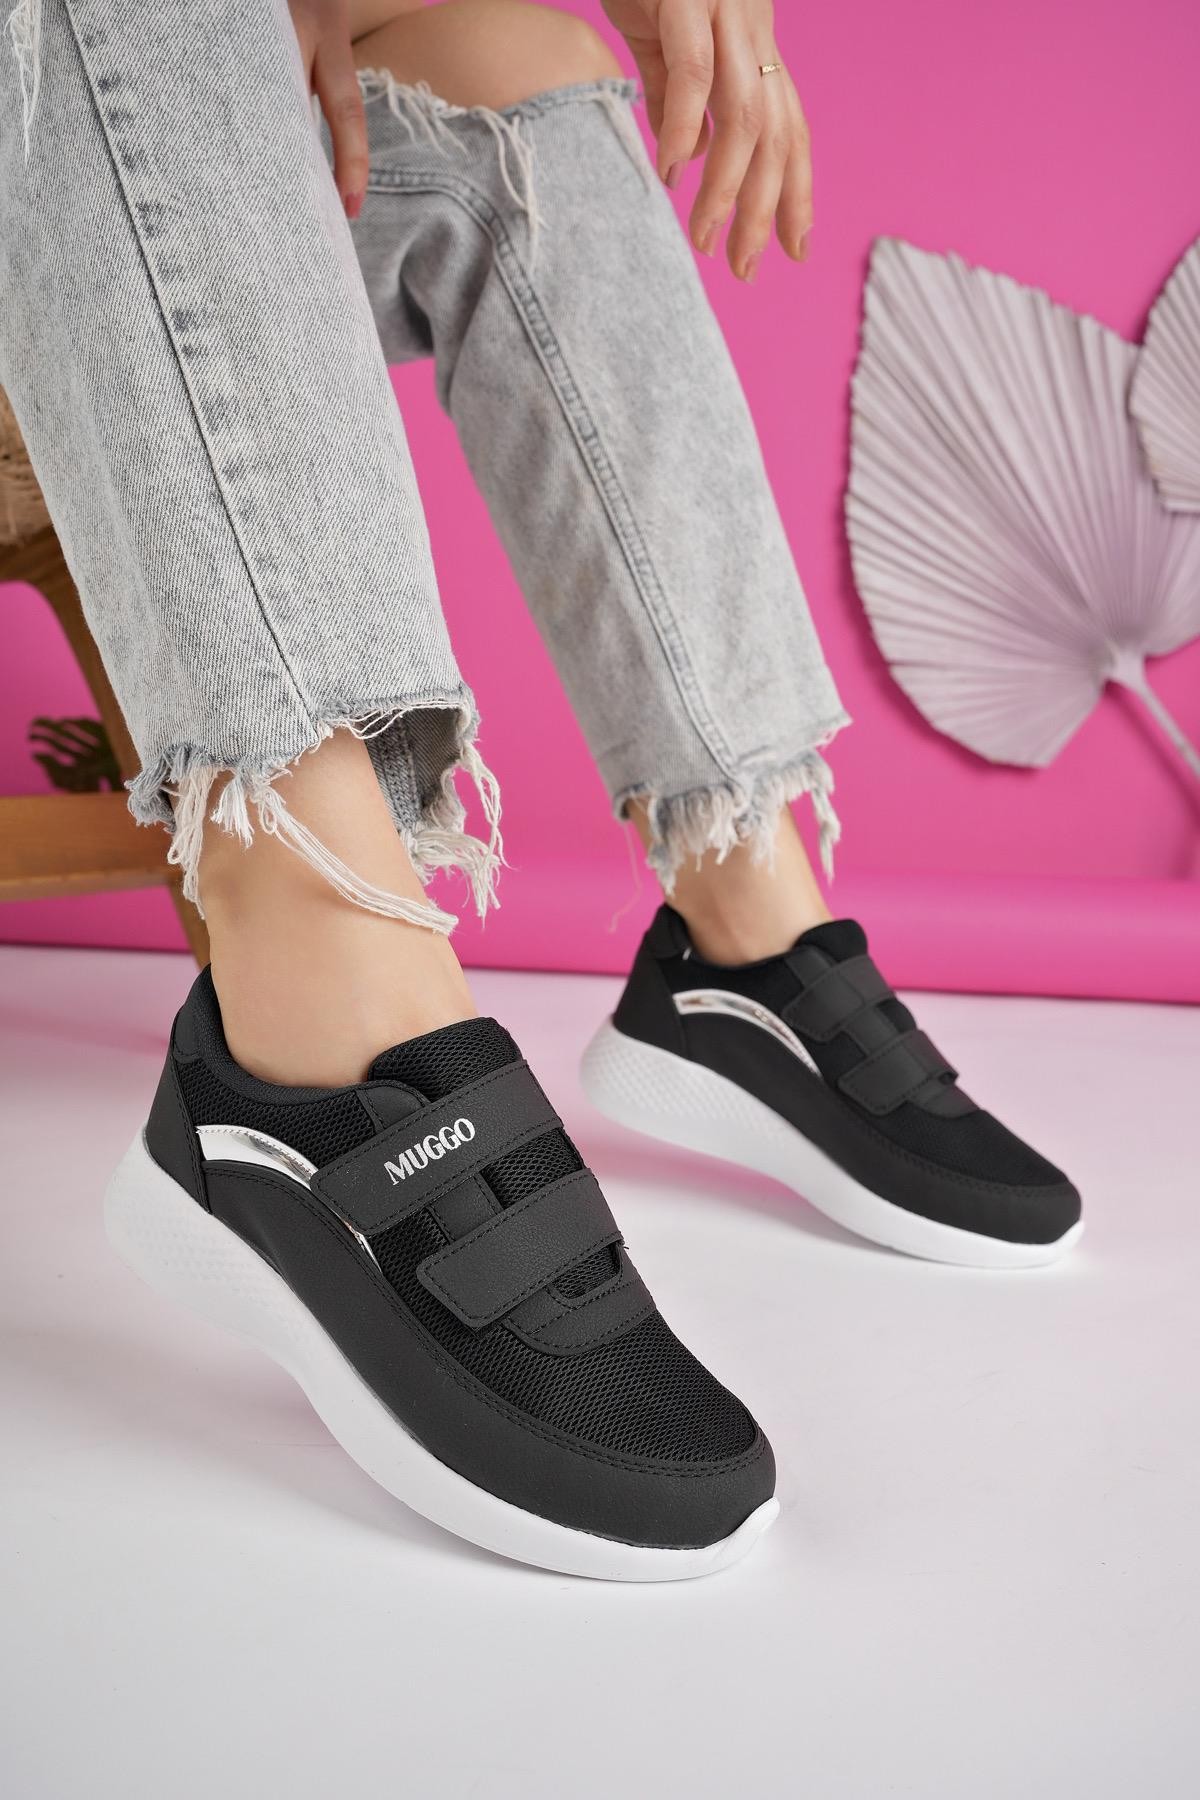 Muggo SAHRA Garantili Kadın Ortopedik Bağcıksız Cırtlı Rahat Sneaker Spor Ayakkabı - SİYAH- BEYAZ